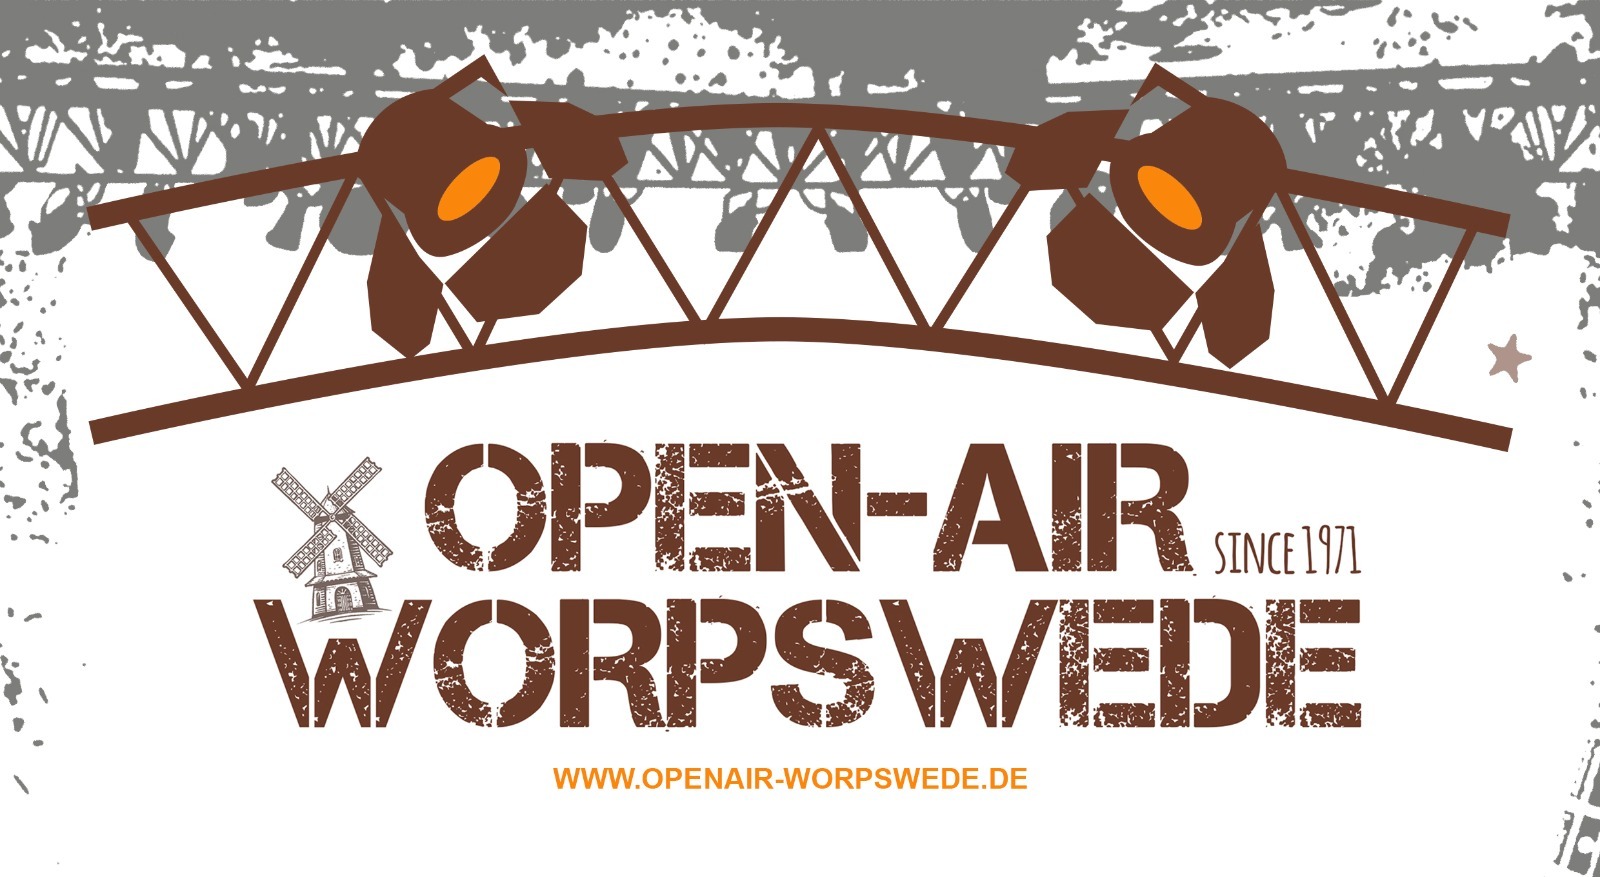 (c) Openair-worpswede.de